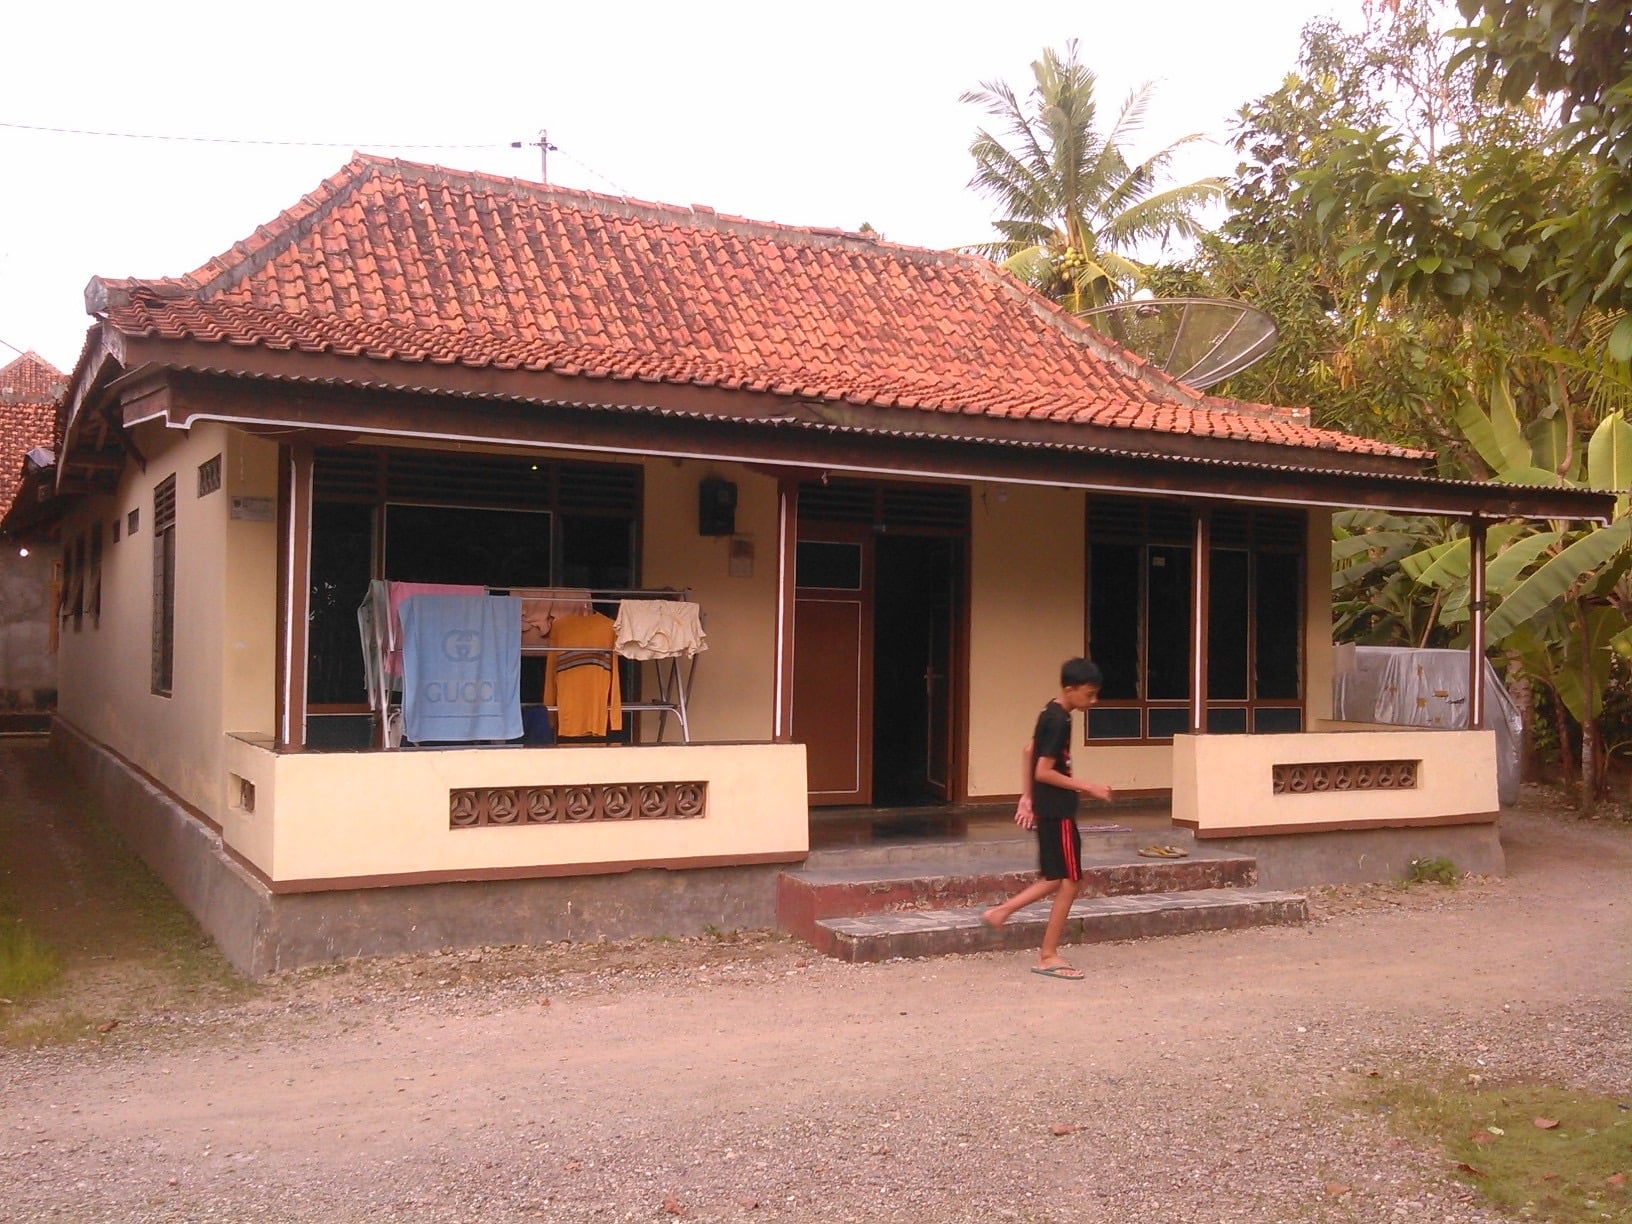  Rumah Desa  Klasik Thegorbalsla